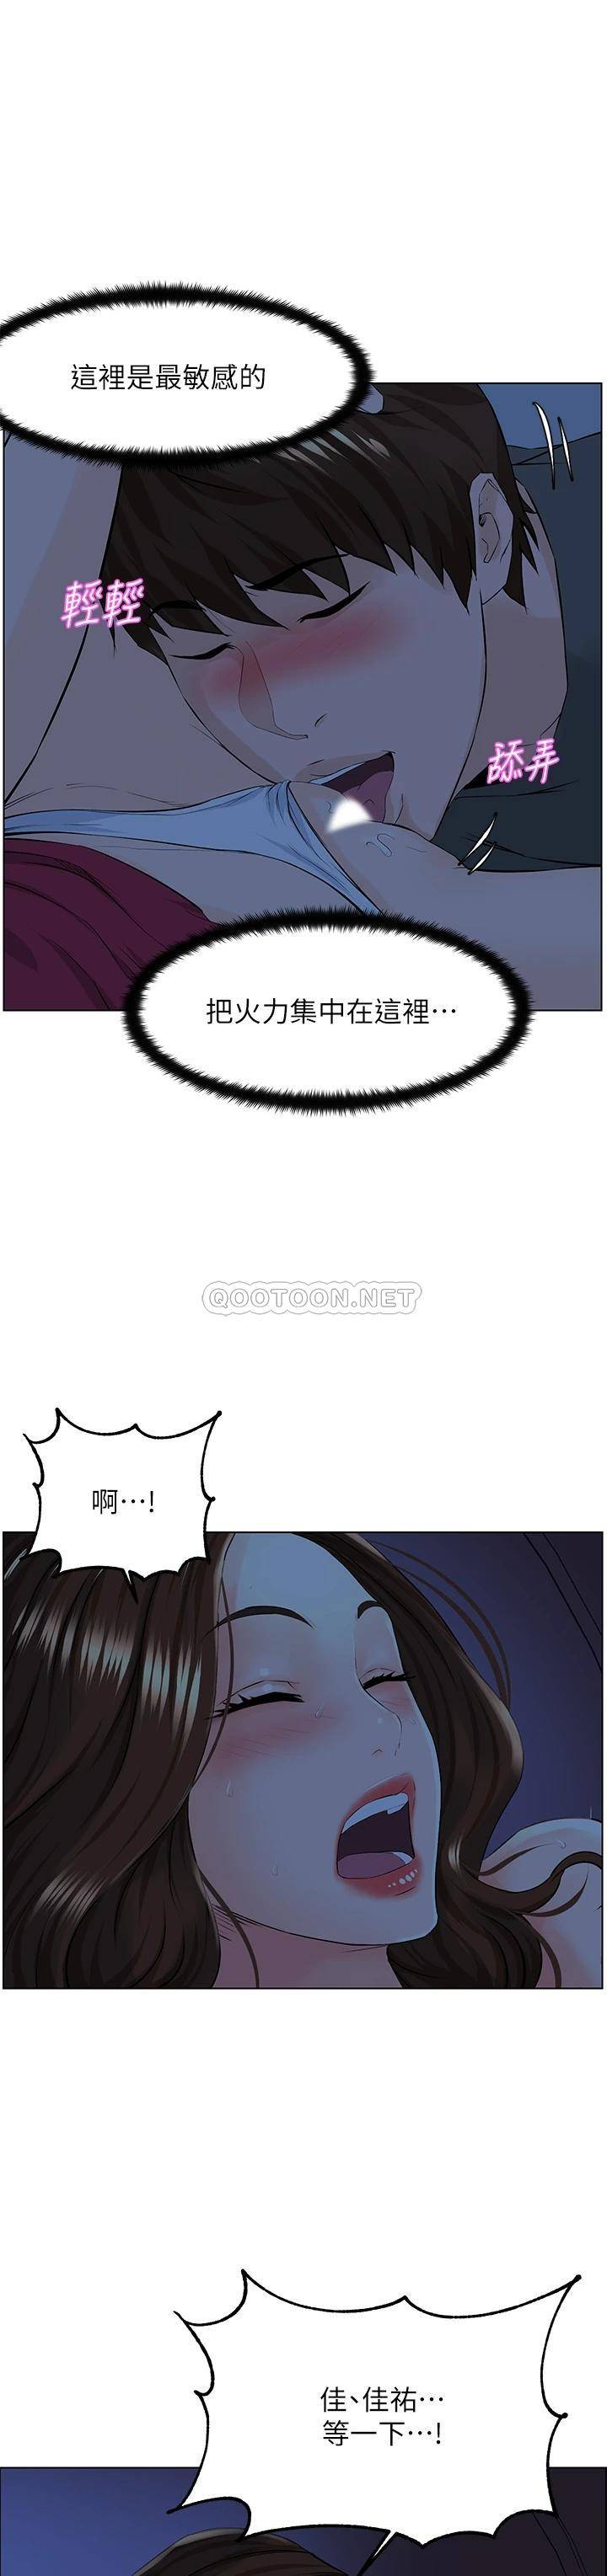 韩国污漫画 現上教學 第9话汗水淋漓的车震 29